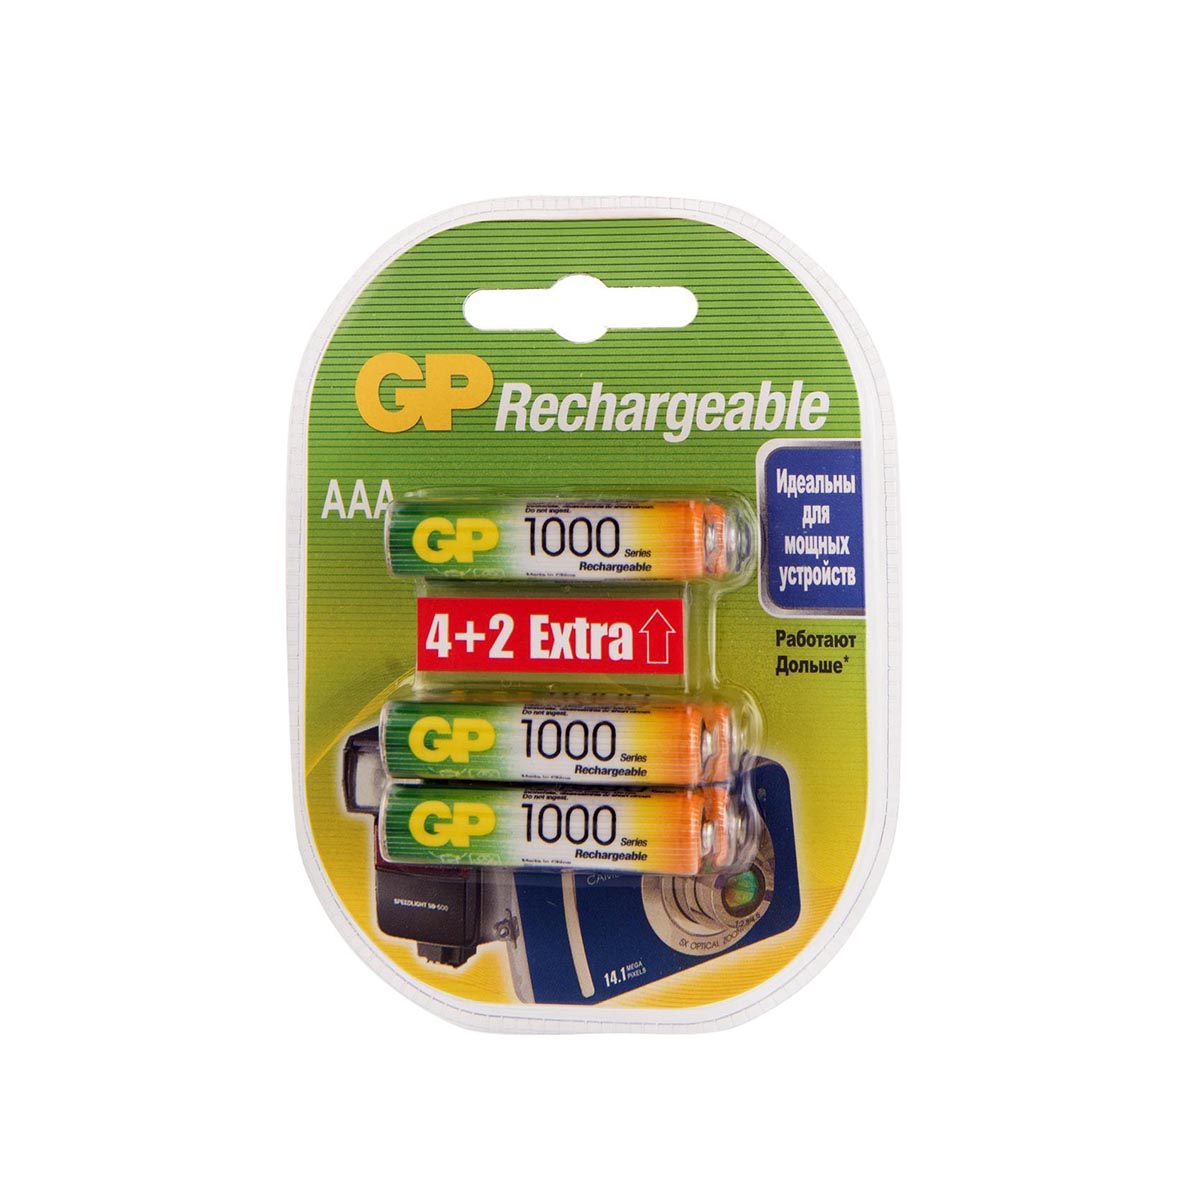 Аккумулятор gp rechargeable 100aaahc4/2-2cr6  тип ааа, 1000 мач (6 шт. в блистере) (1/6/60)